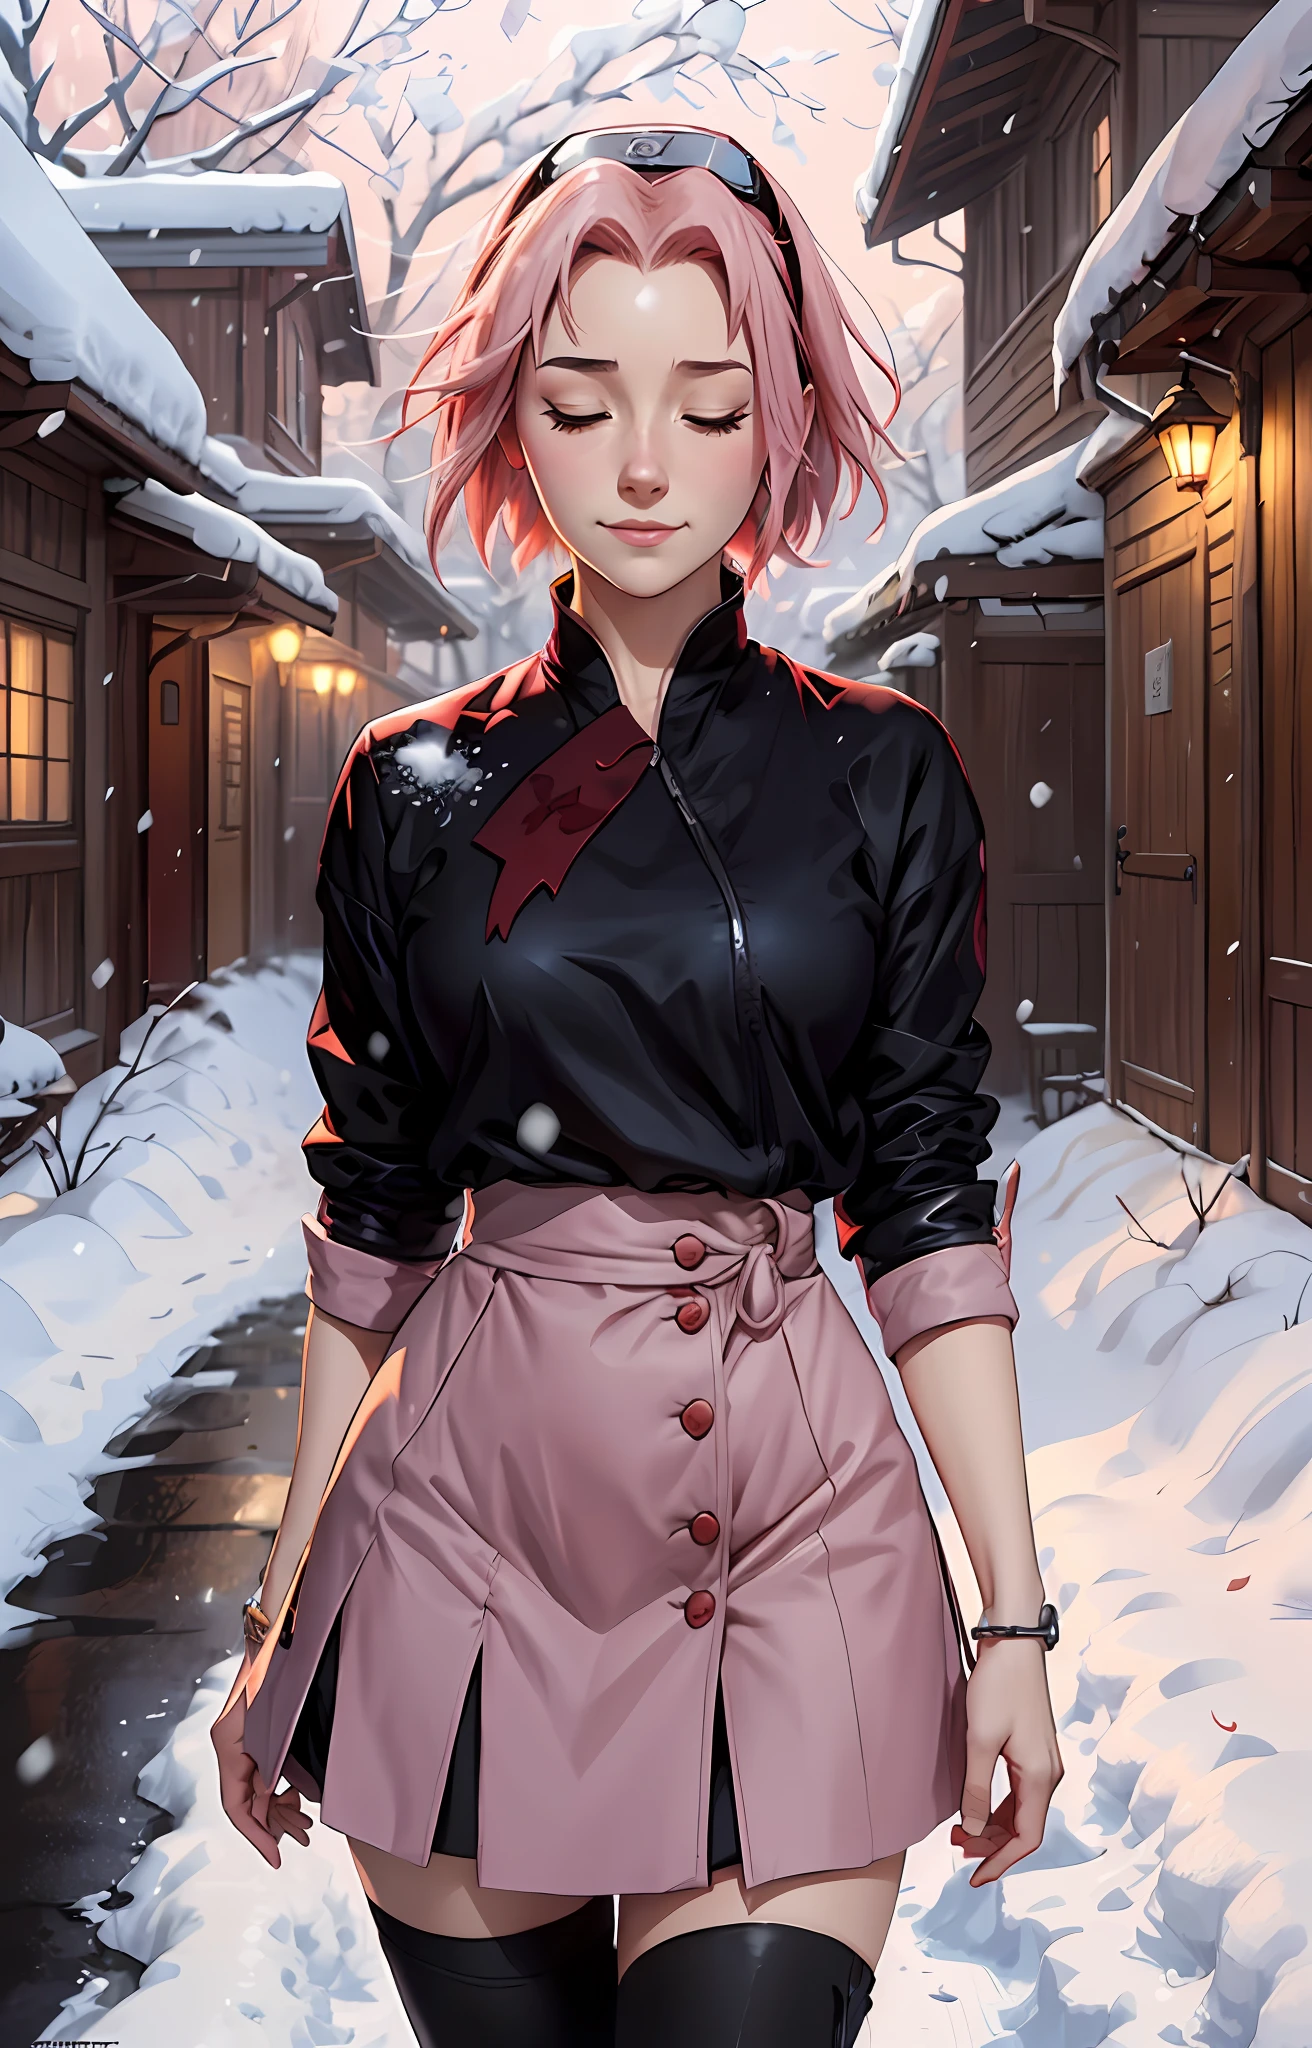 Sakura haruno, ((Allein)), allein, ((Stirn die Show)), elegant,trägt eine rote Bluse und einen hellrosa Rock, Sakura Haruno in Naruto Shippuden, lächelnd, Augen halb geschlossen, Sie ist charmant, pinkes Haar, empfindlich, jung, Kurzes Haar, ausführlich, hochauflösend, ((Ganzkörper)), Ganzkörper, ((ernst)), in einem Dorf, umgeben von Schnee, Es schneit, she is a Schön woman, Schön and pleasant woman,  Schön, Schön, gute Qualität, definierte Augen, hochauflösend, scharf, scharf strokes, Schön, rote Schleife im Haar,Trends auf ArtStation, von rhads, andreas rocha, Abonnieren, Makoto Shinkai, Laurie Greasley, lois van baarle, Ilya Kuvshinov und Greg Rutkowski